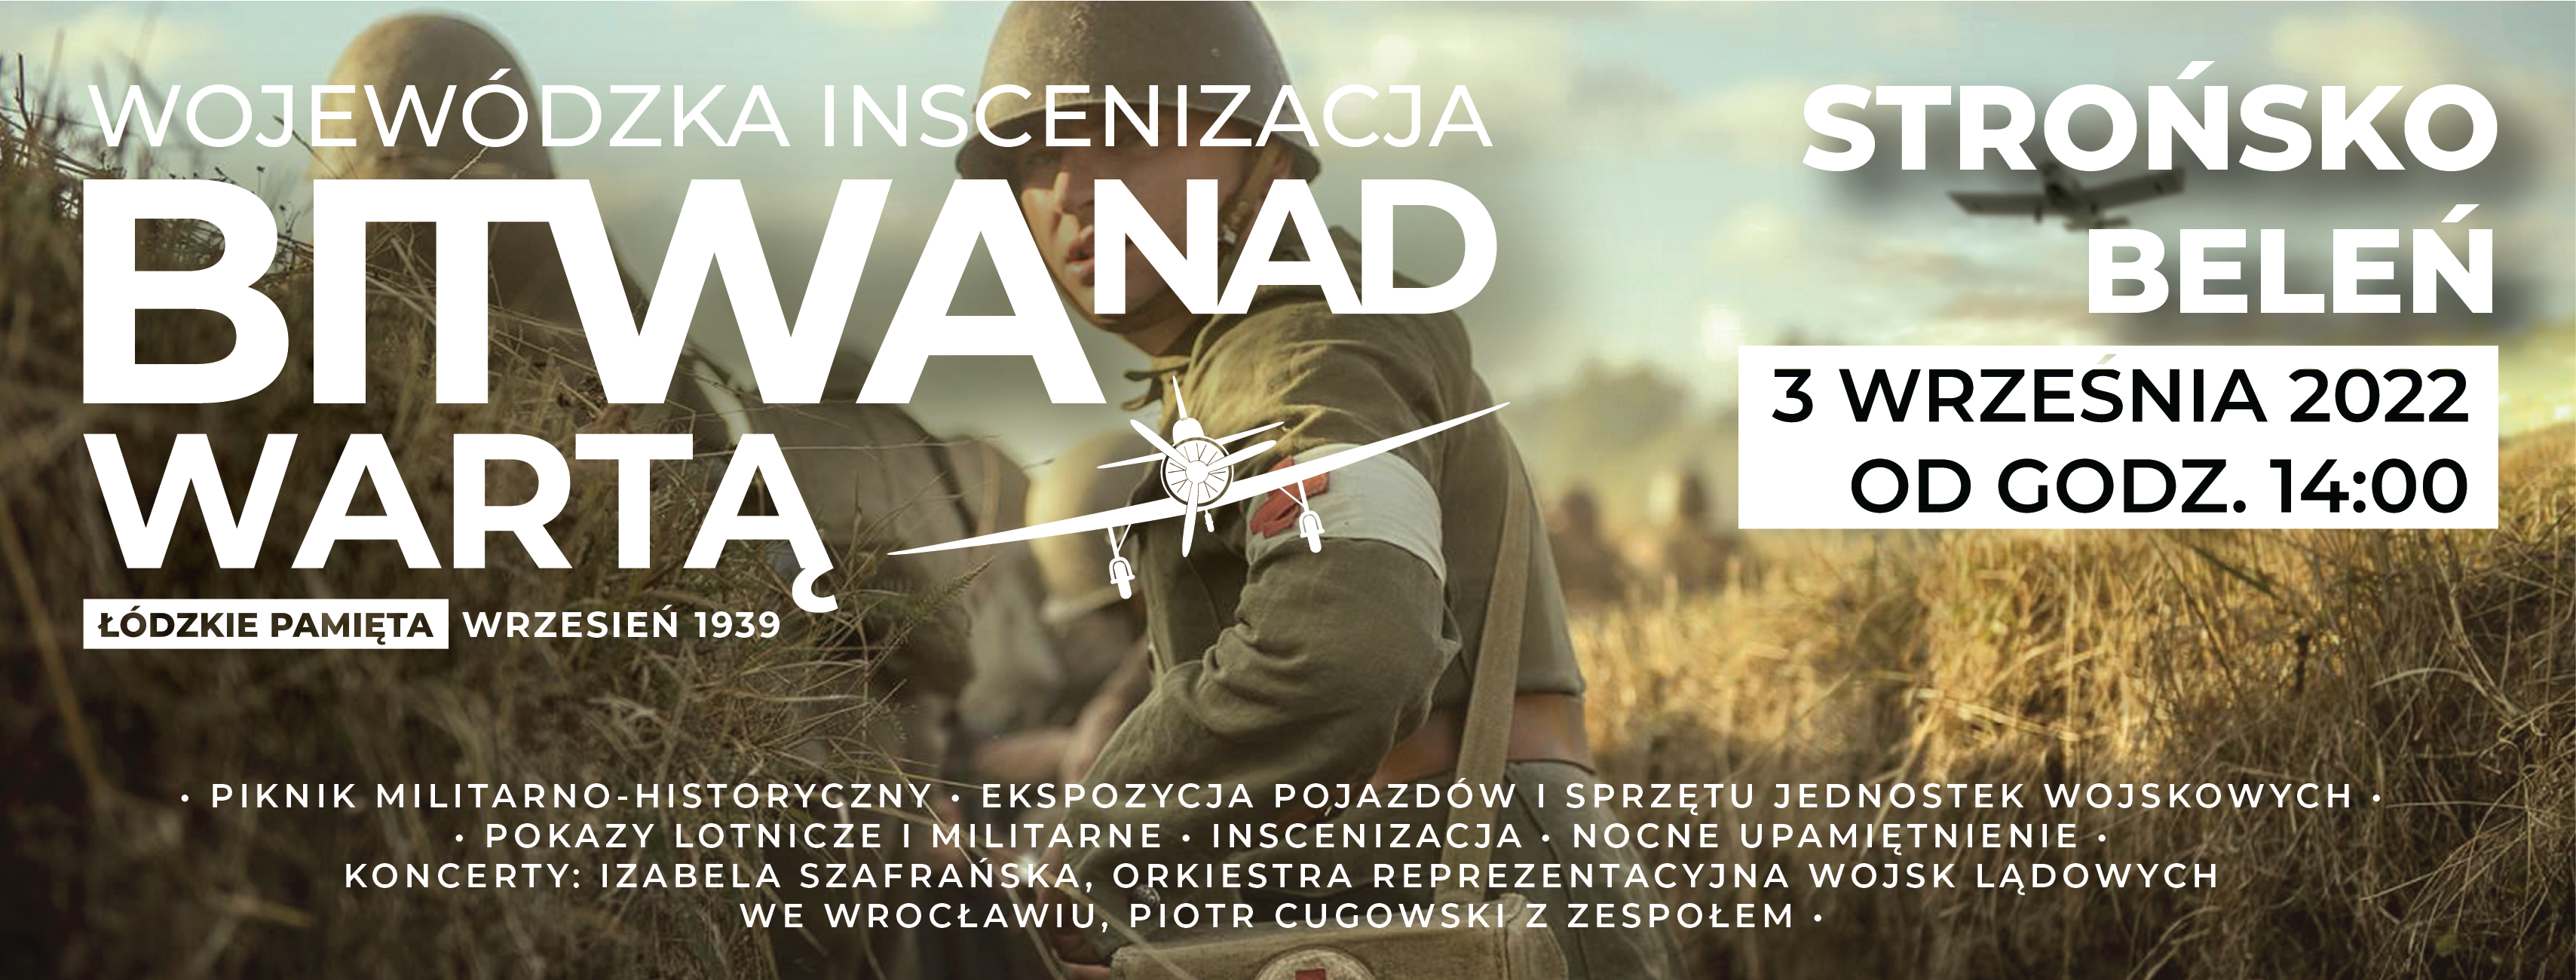 Wojewódzka Inscenizacja Bitwy nad Wartą - Łódzkie pamięta - wrzesień 1939